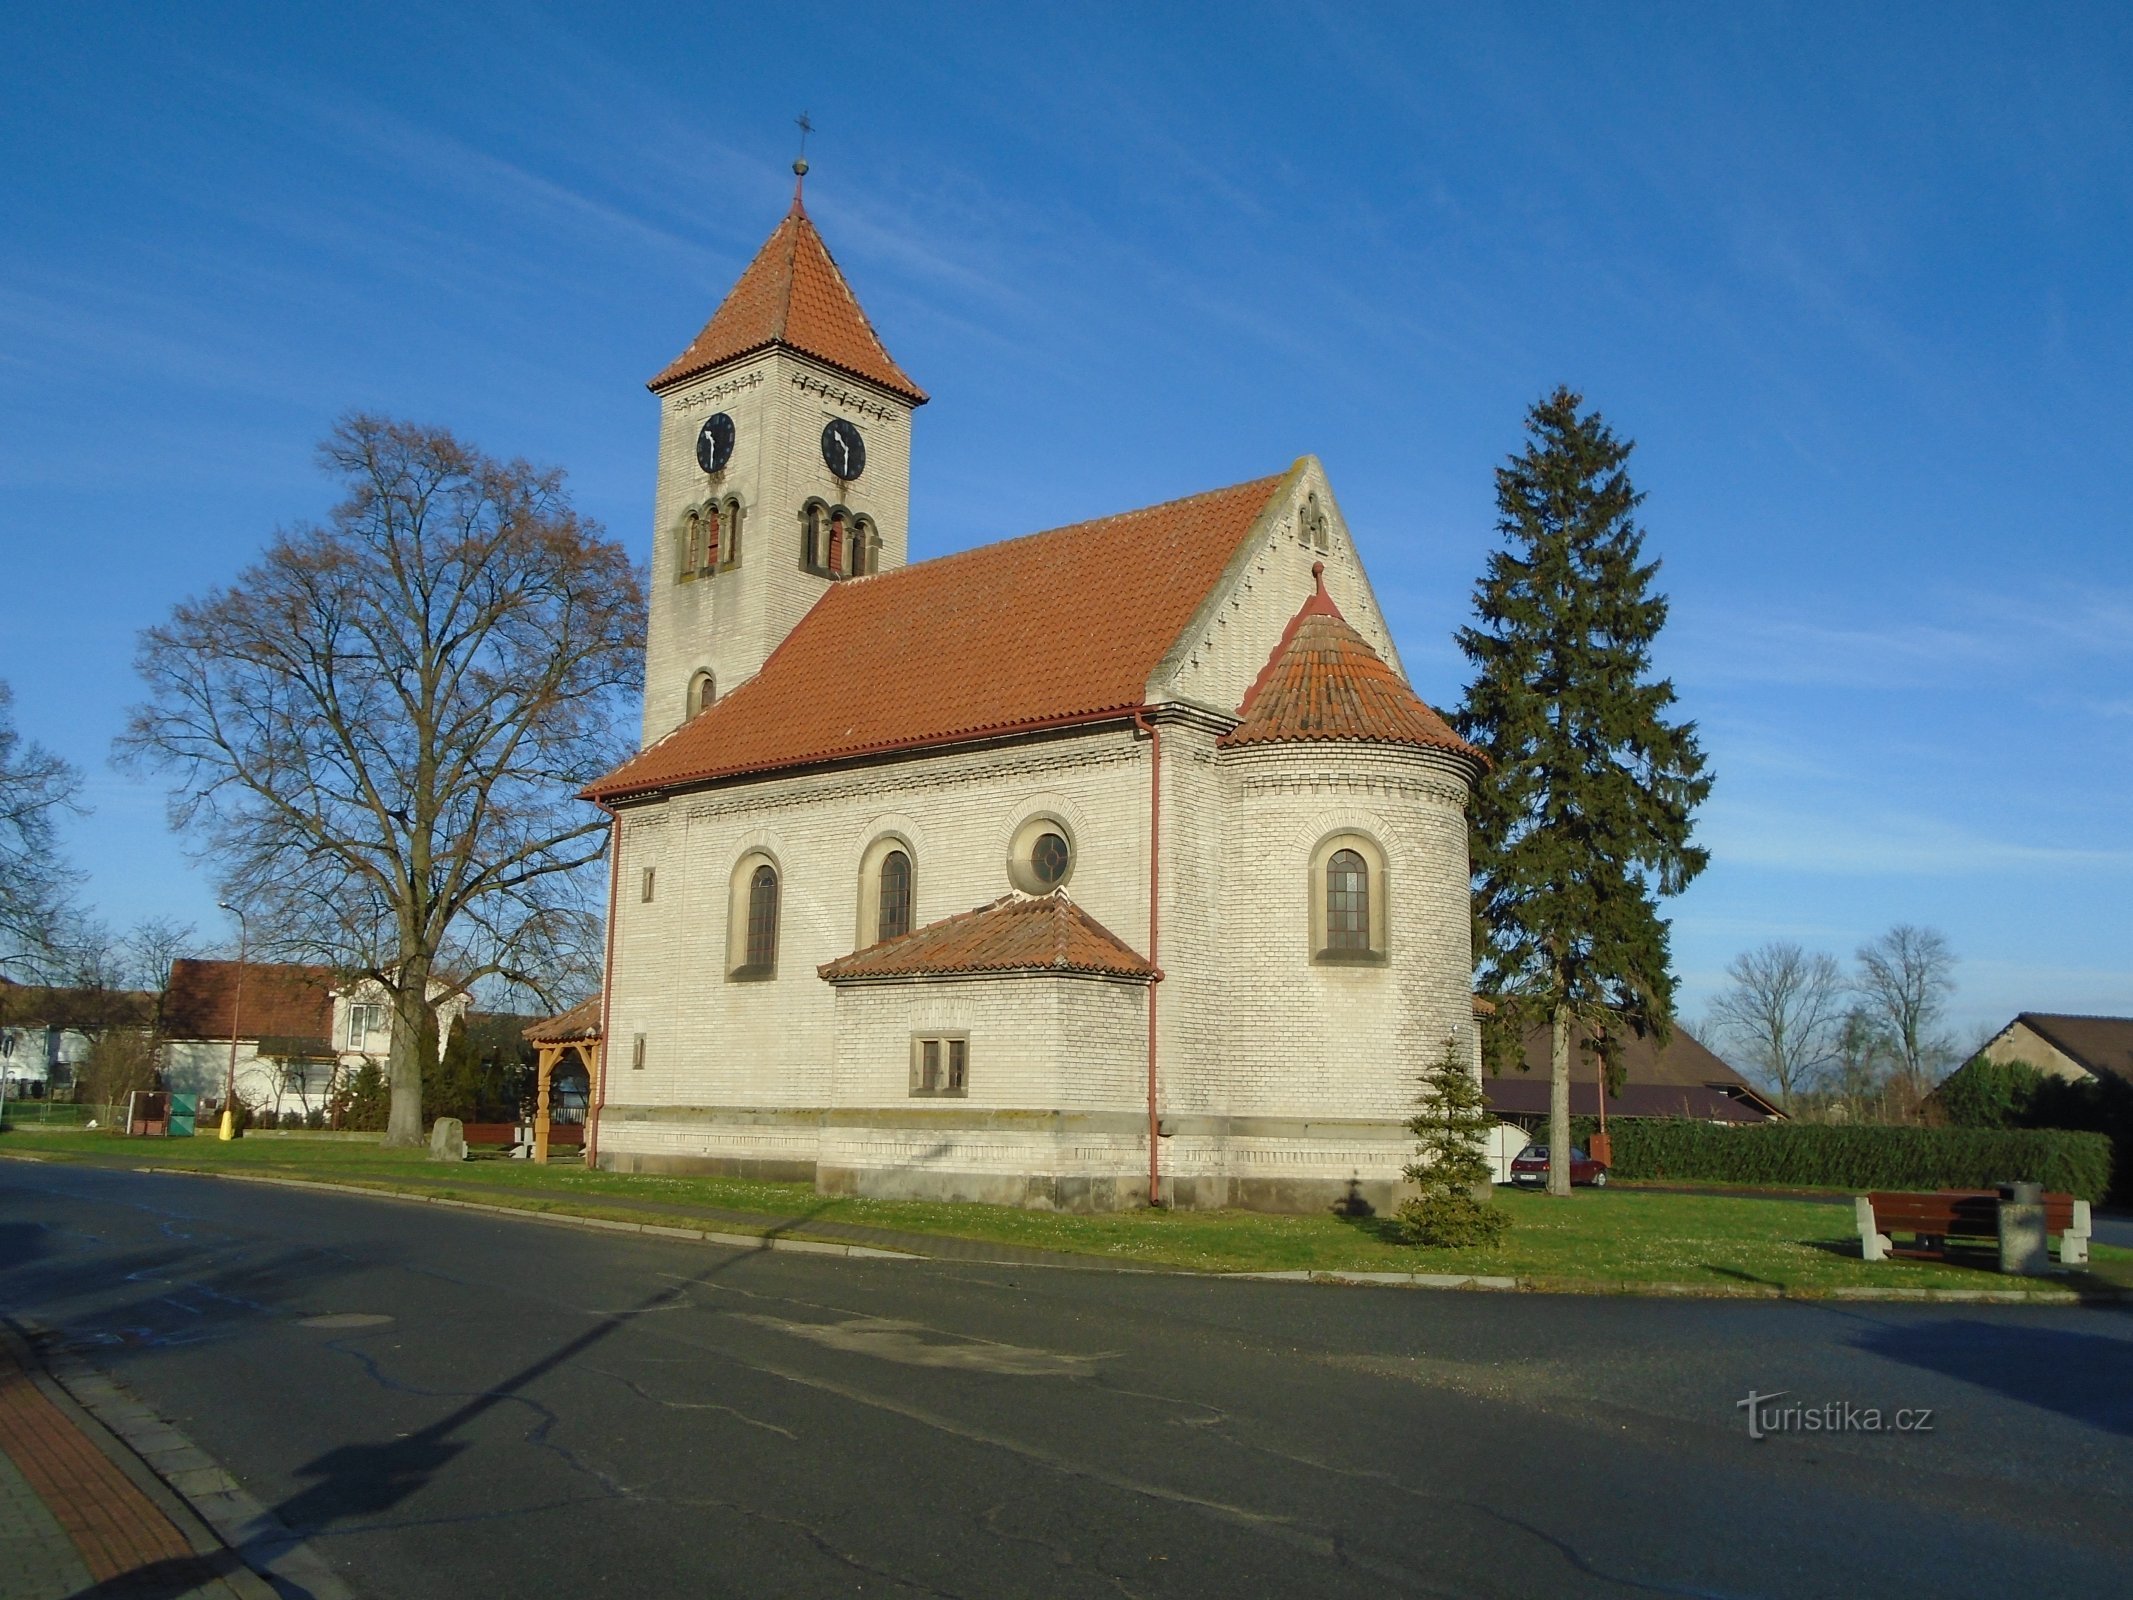 Kirken St. Vojtěch, biskop og martyr (Dolany)